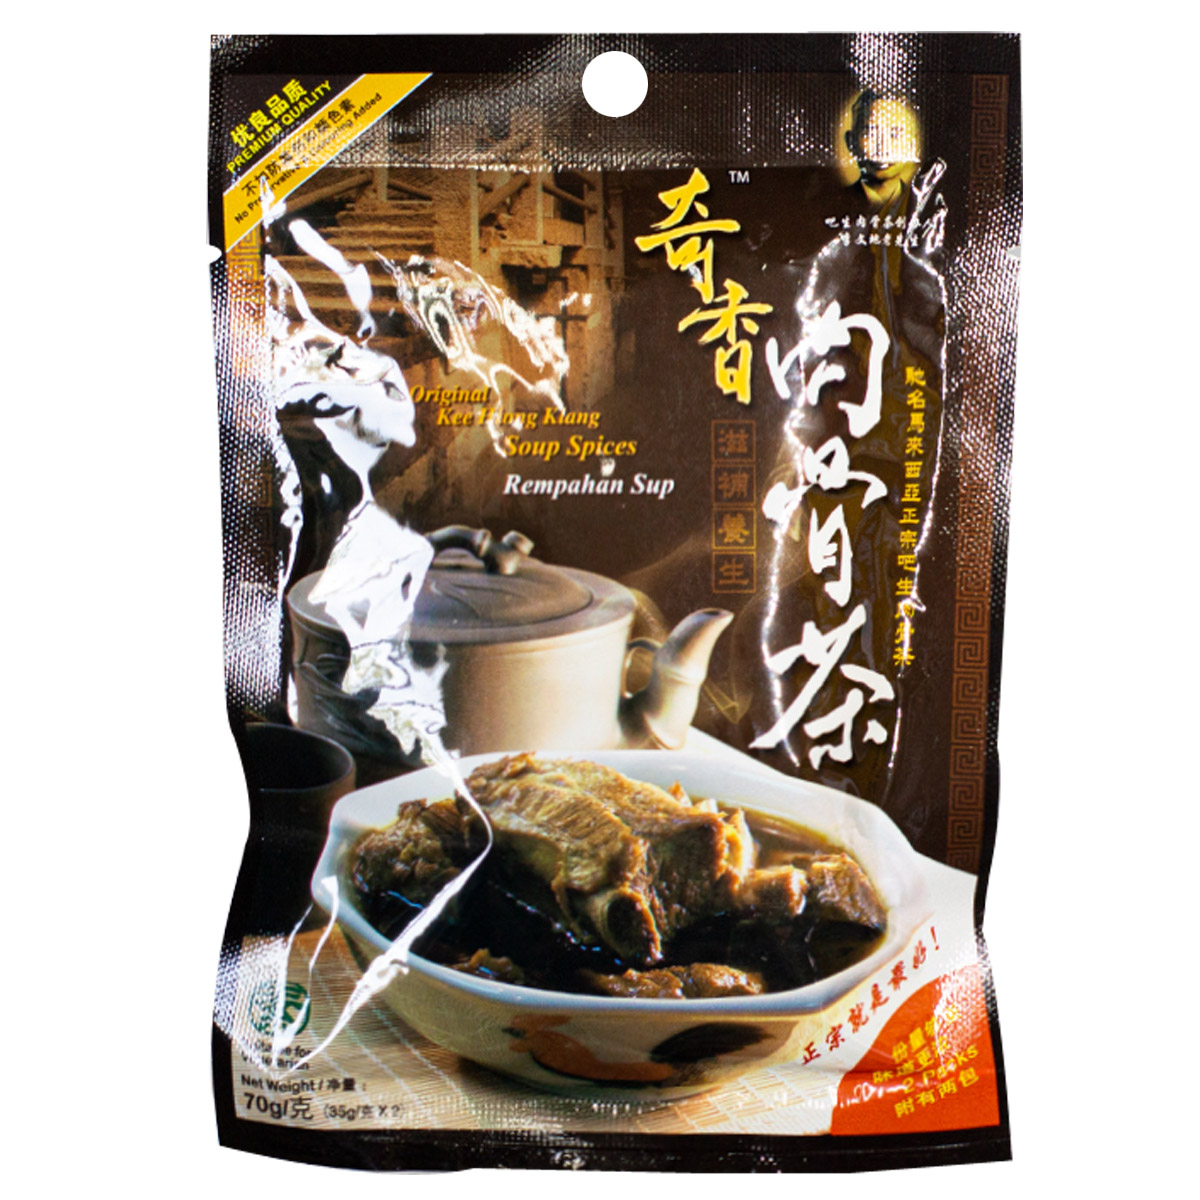 Image herbal Original Kee Hiong Klang Bah kut Teh 奇香-肉骨茶 70 grams